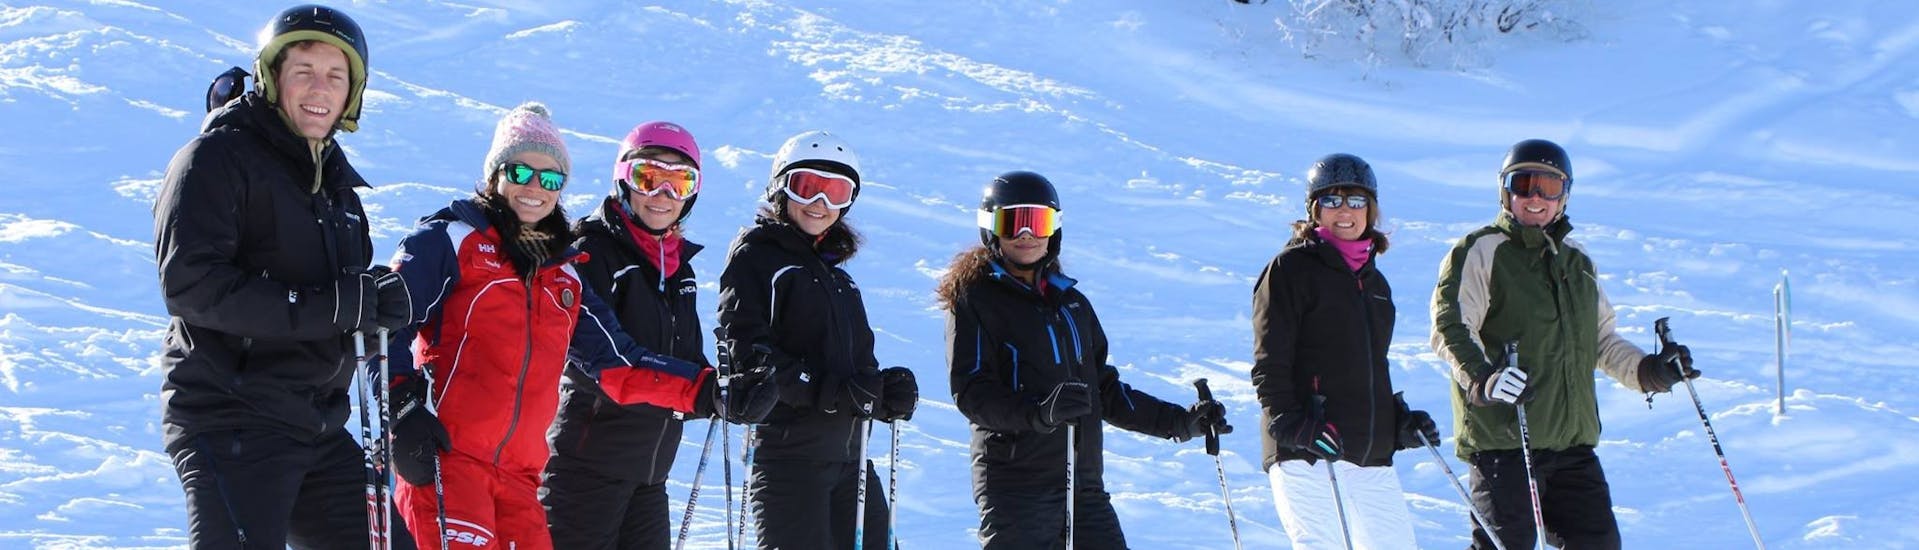 Skiërs staan in de rij voor een foto tijdens hun volwassen skilessen (vanaf 13 jaar) voor alle niveaus bij ESF La Tania.